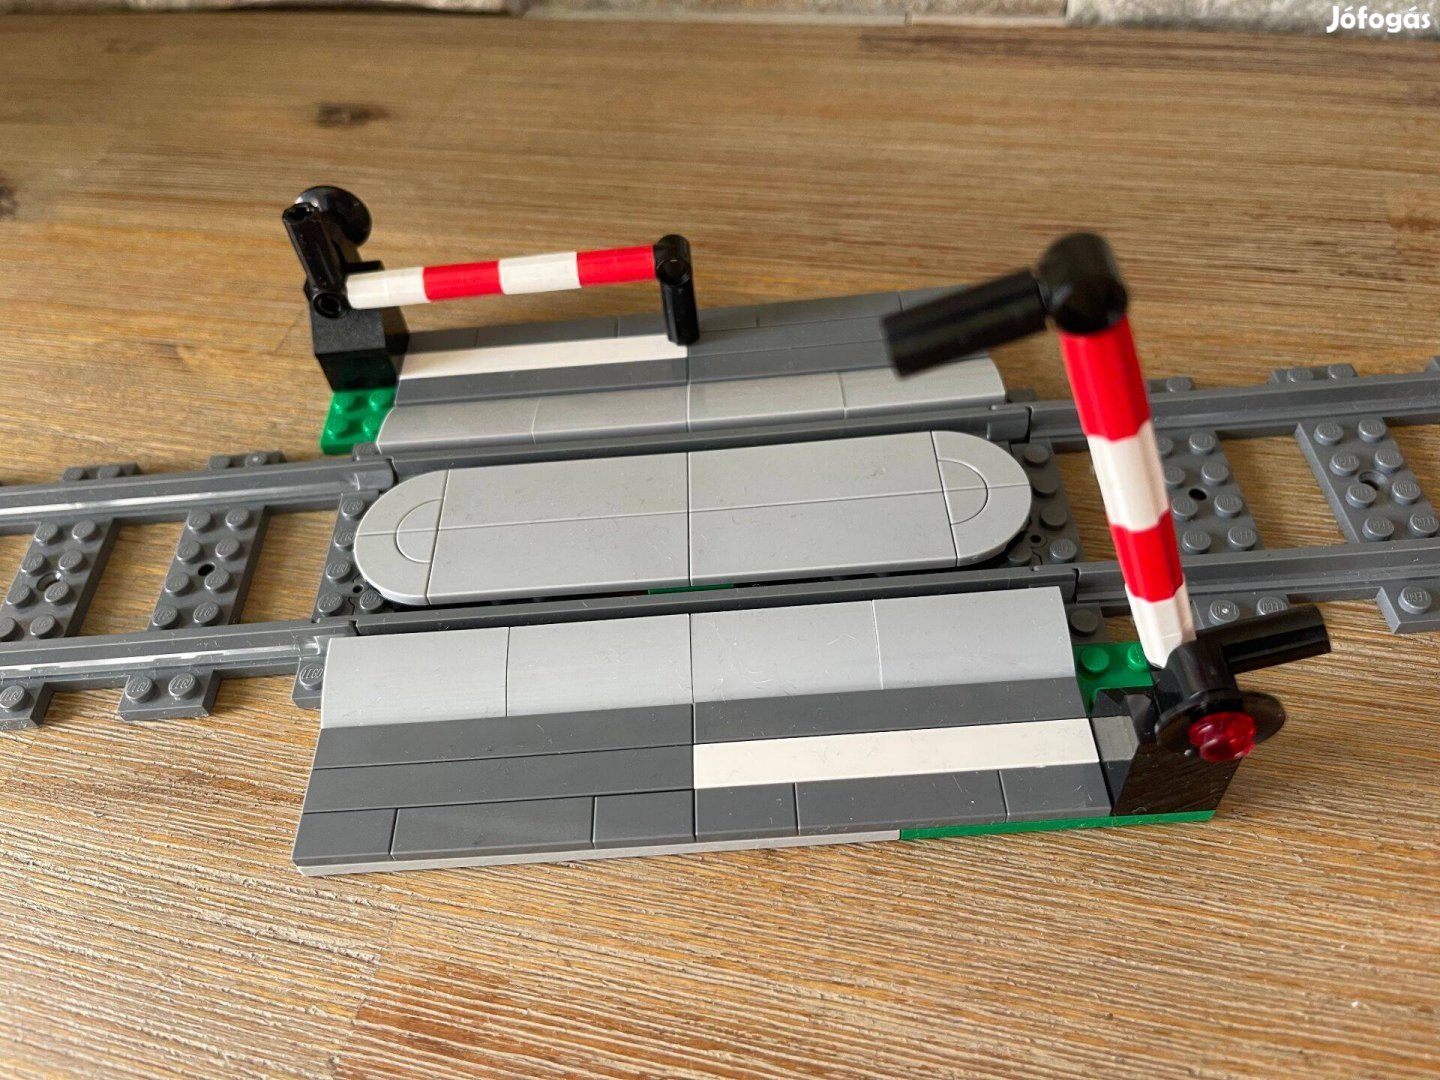 Lego vasut vonat atjaro Lego vasuti sorompos atjaro